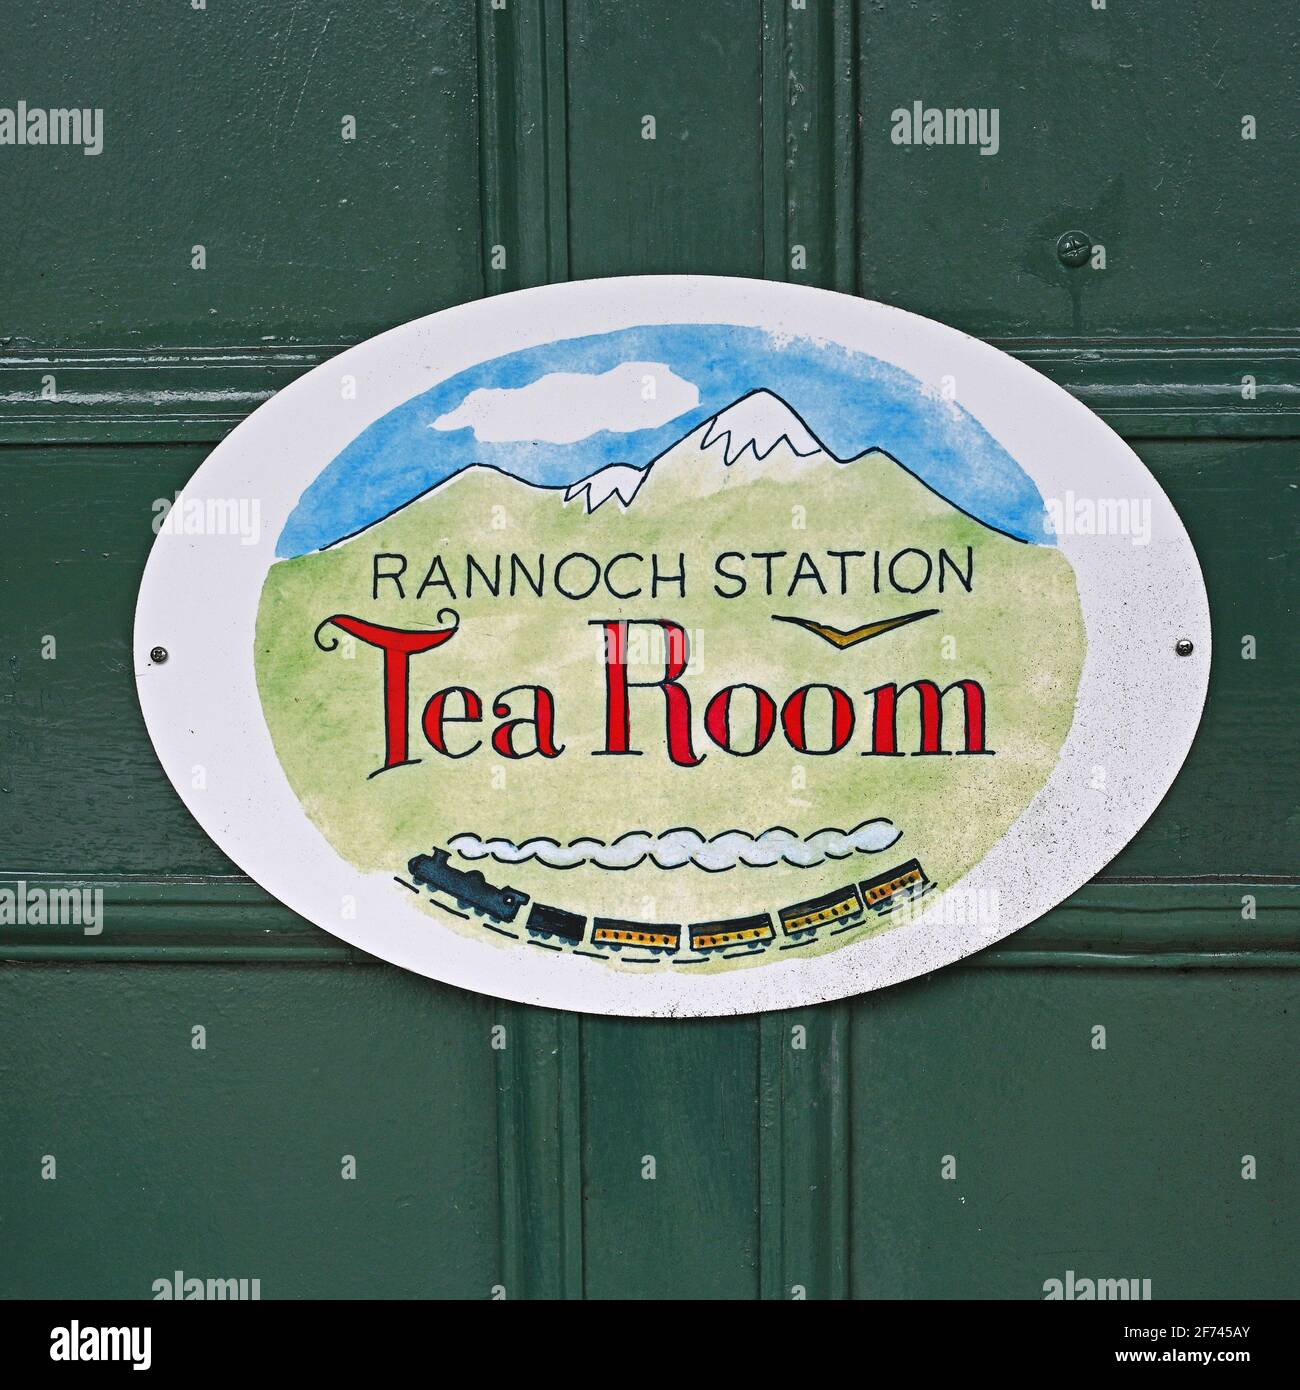 Rannoch Station, Écosse, Royaume-Uni - avril 4 2021 : gros panneau pour Rannoch Station Tea Room, un célèbre café de la gare de Rannoch, Scottish Highla Banque D'Images